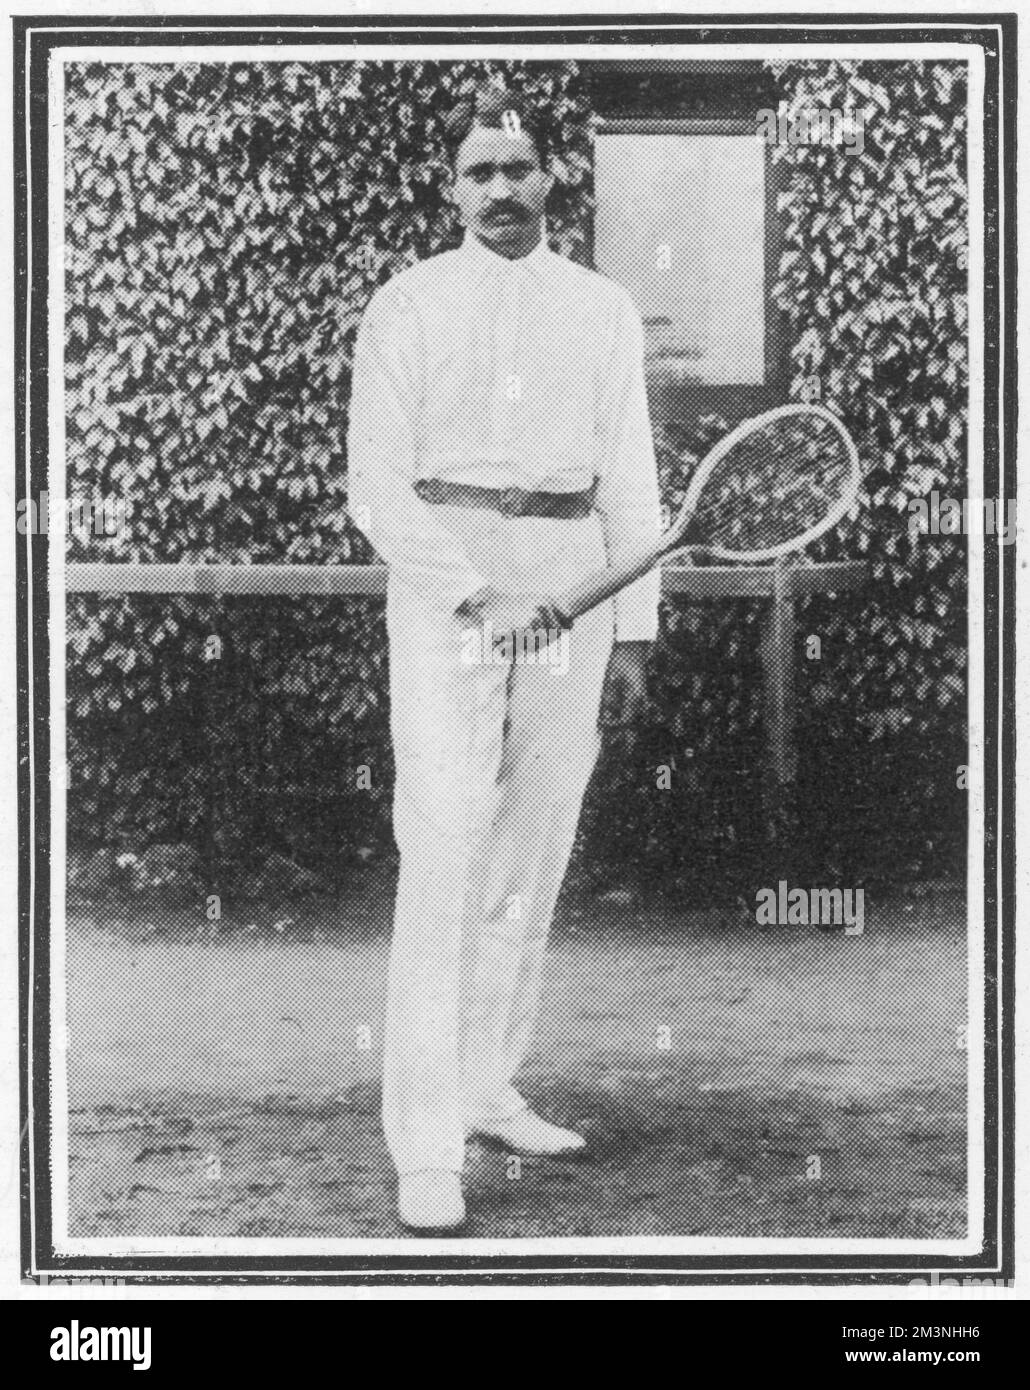 Giocatore indiano di tennis Sirdar Nihal Singh che ha giocato nel campionato di tennis Wimbledon 1909. Data: 1909 Foto Stock